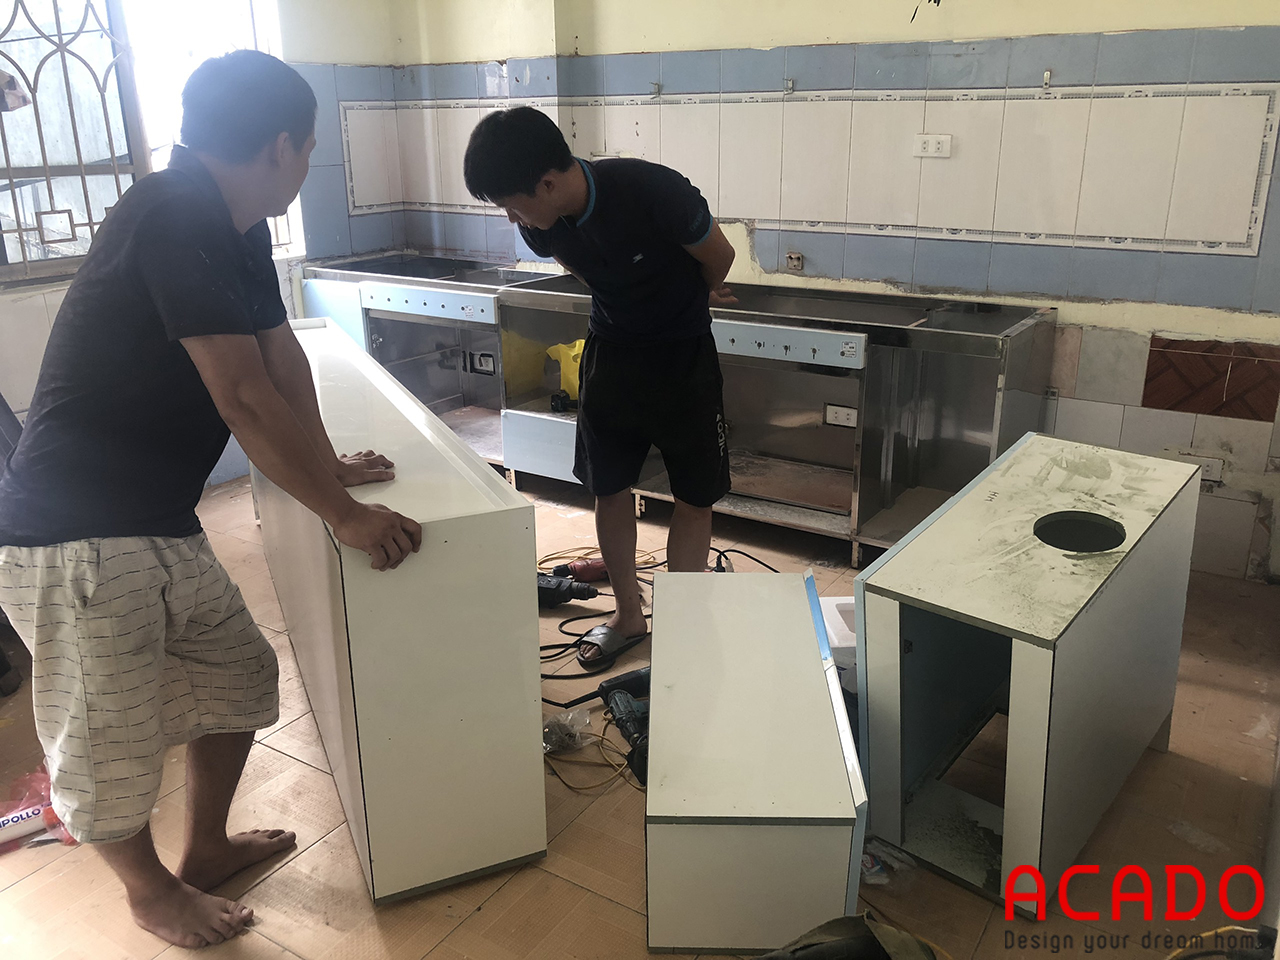 Thợ thi công ACADO đã bắt đầu vận chuyển đồ để tiến hành lắp đặt tủ bếp